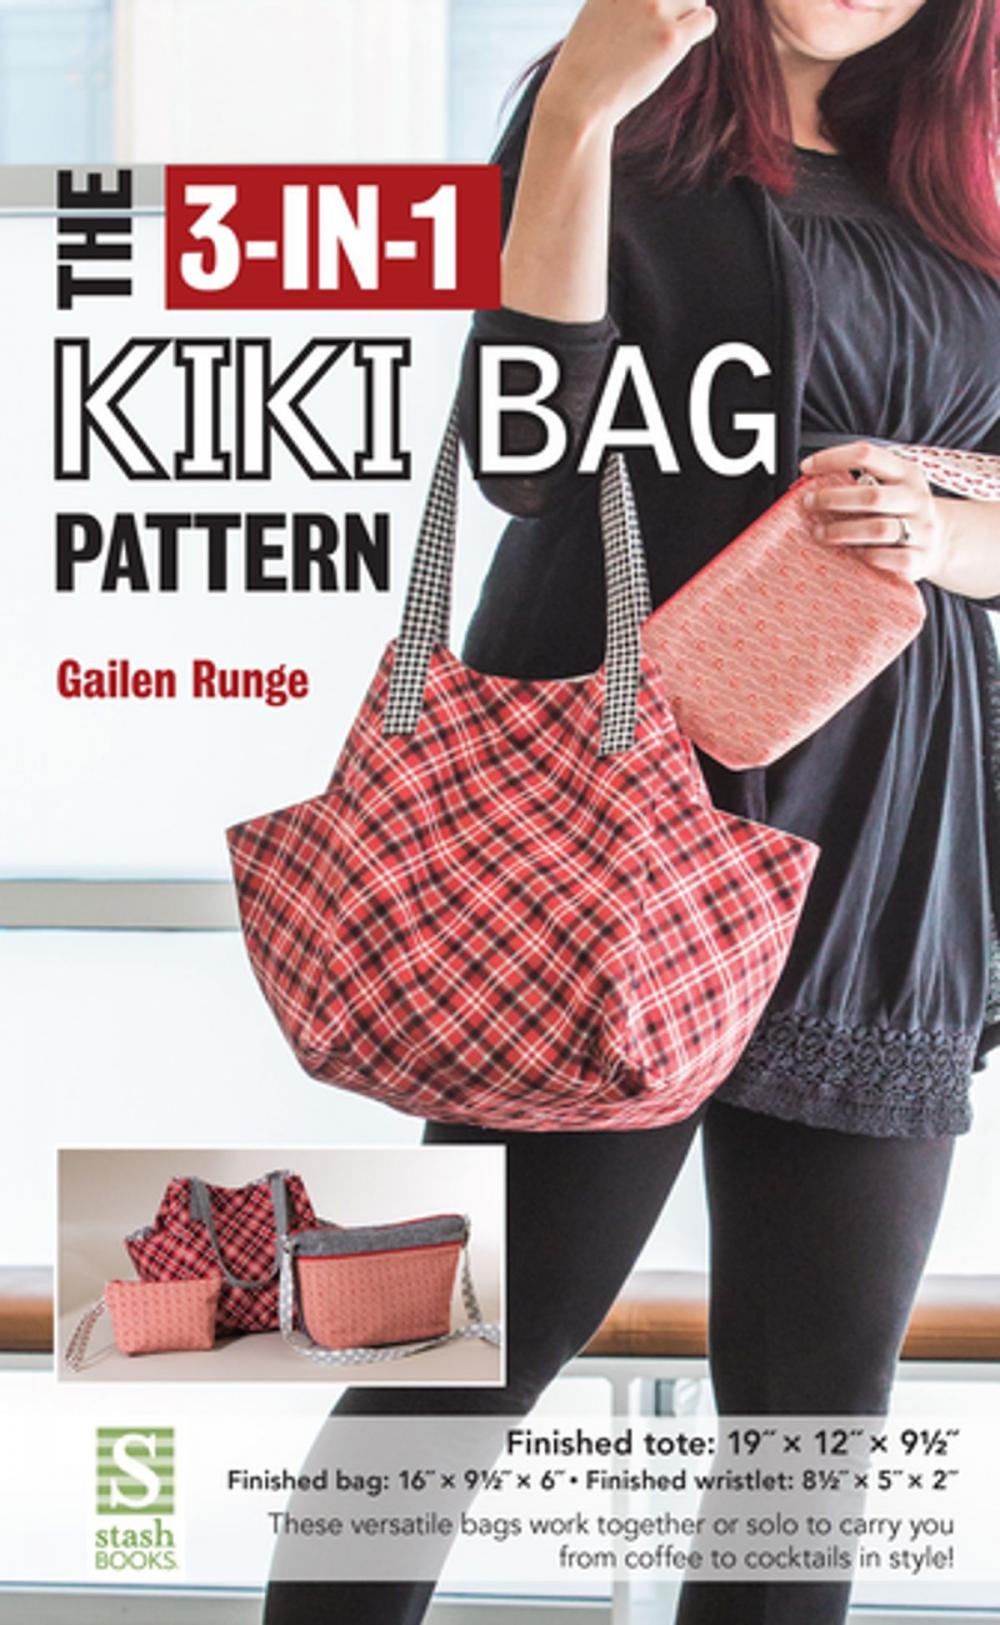 Big bigCover of The 3-in-1 Kiki Bag Pattern